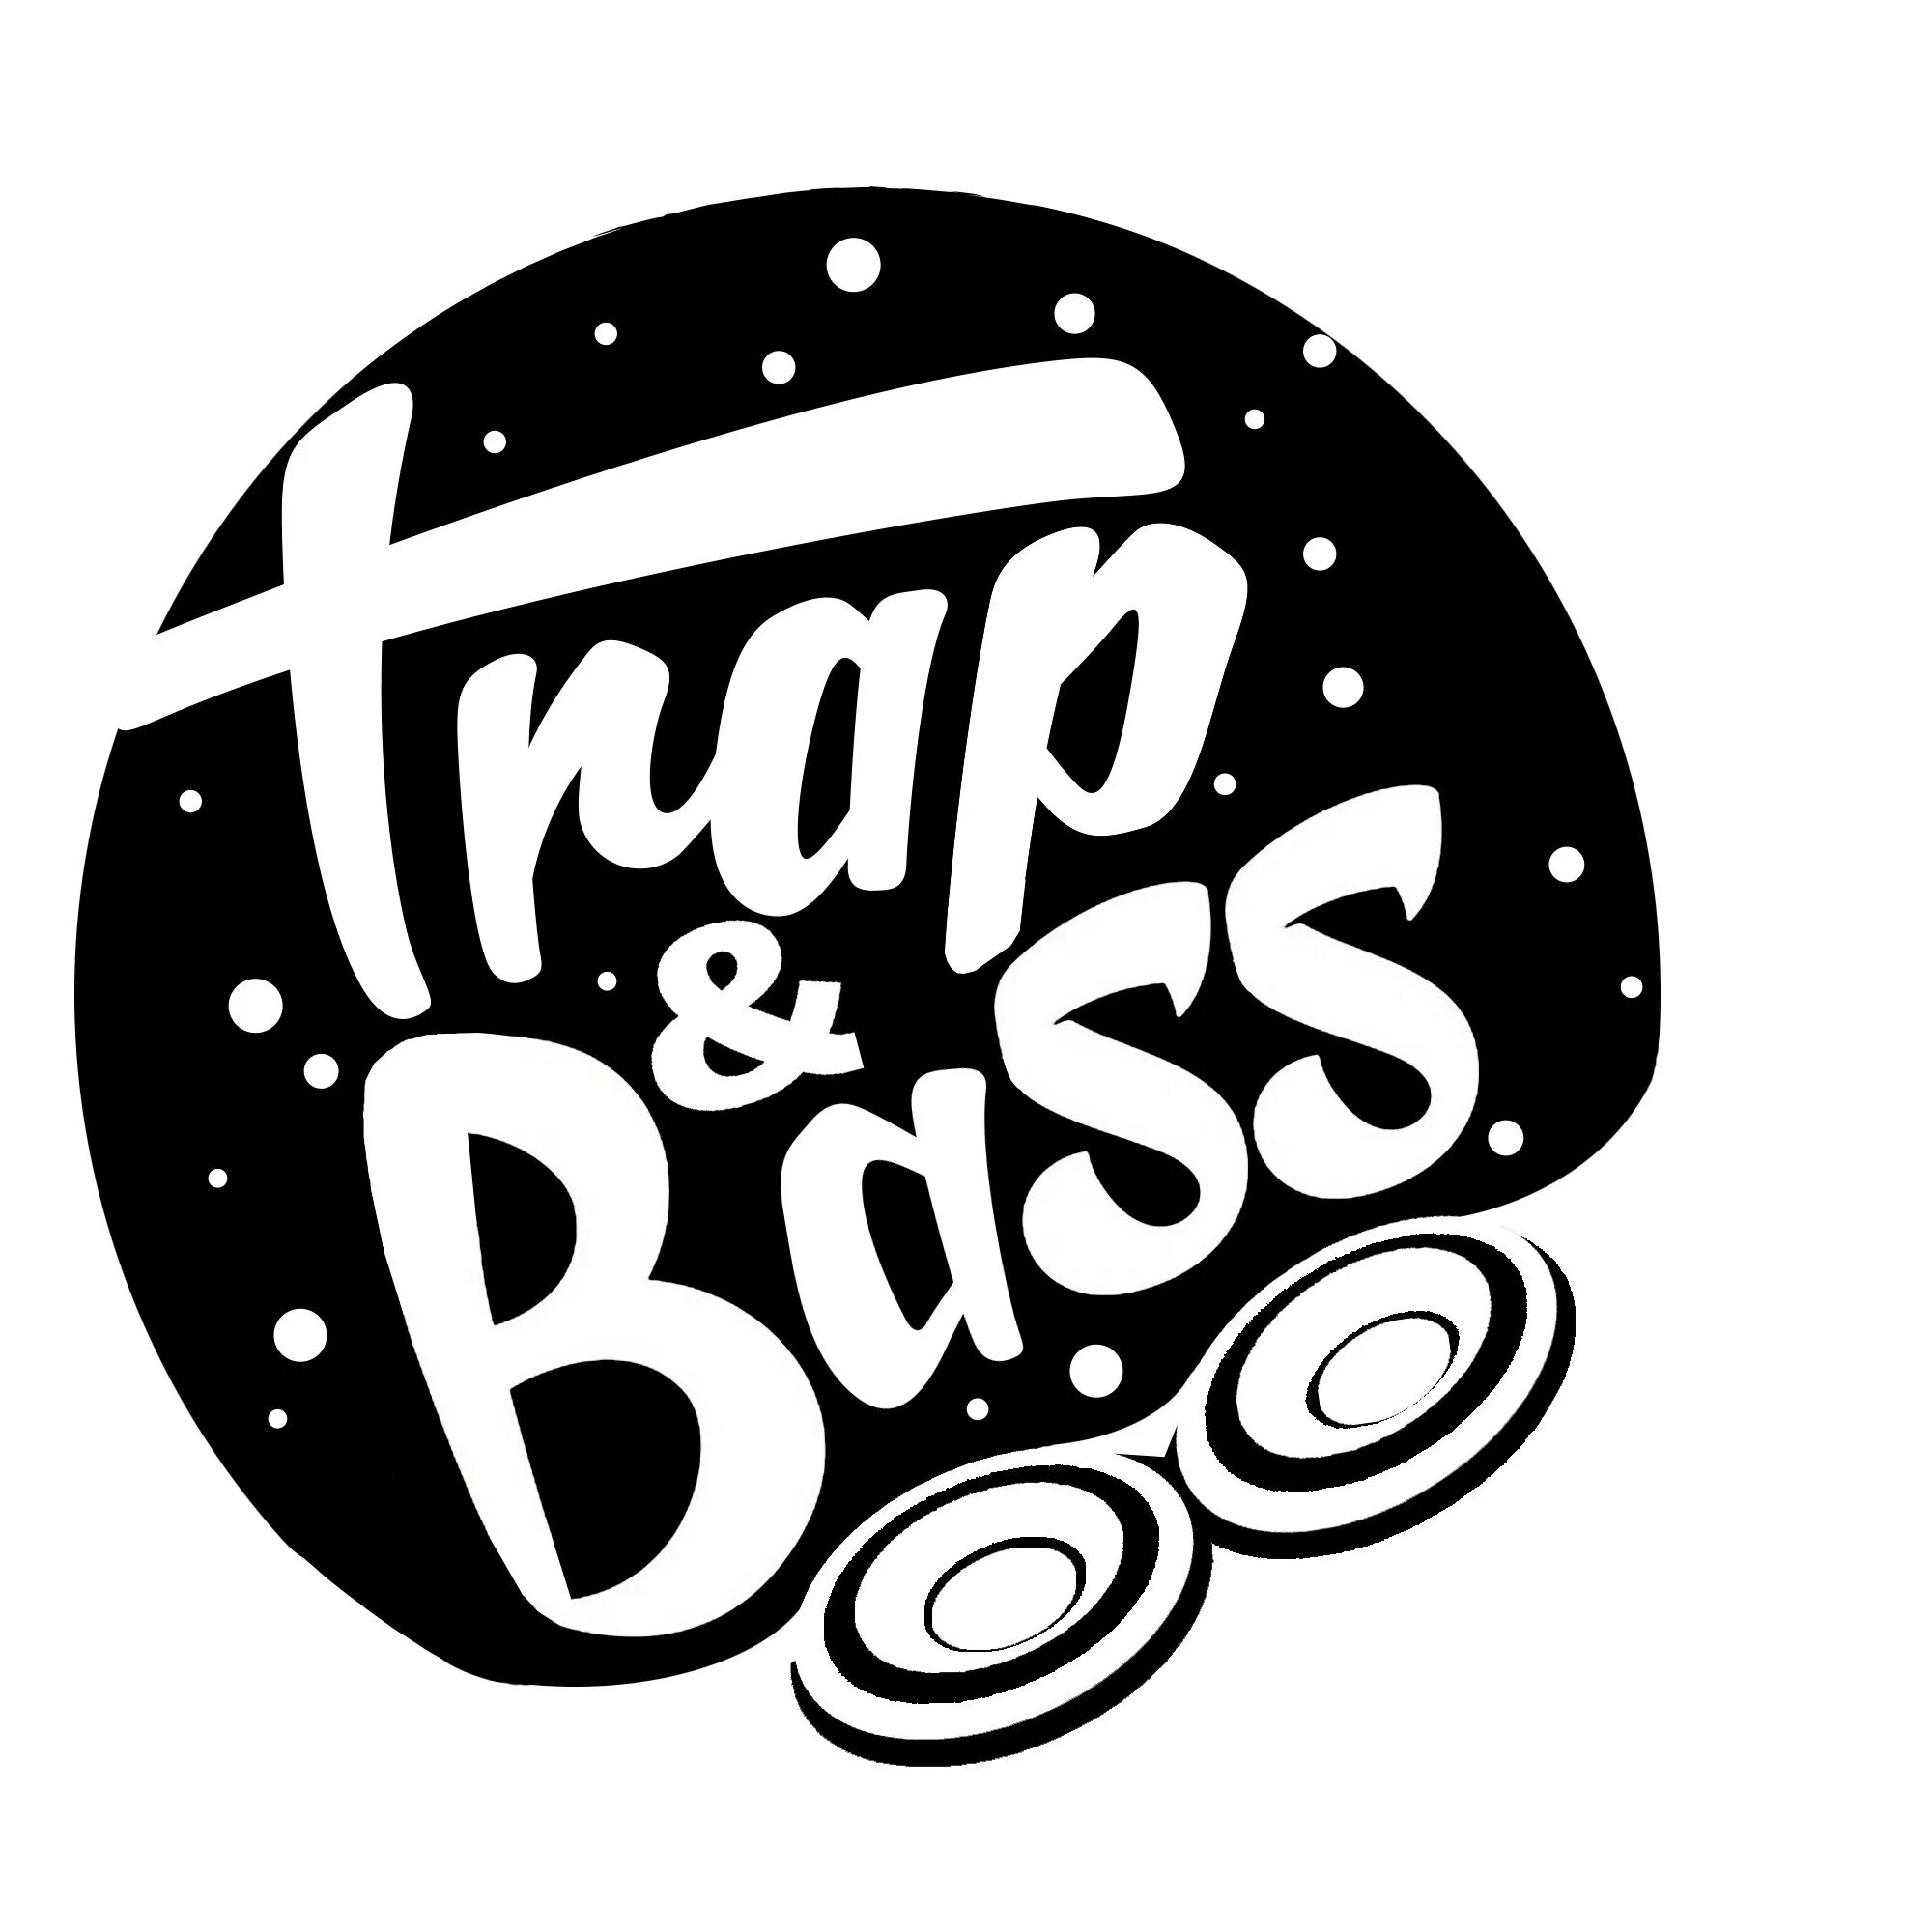 Bass nation. Трап натион. Bass логотип. Trap логотип. Логотип трап натион.